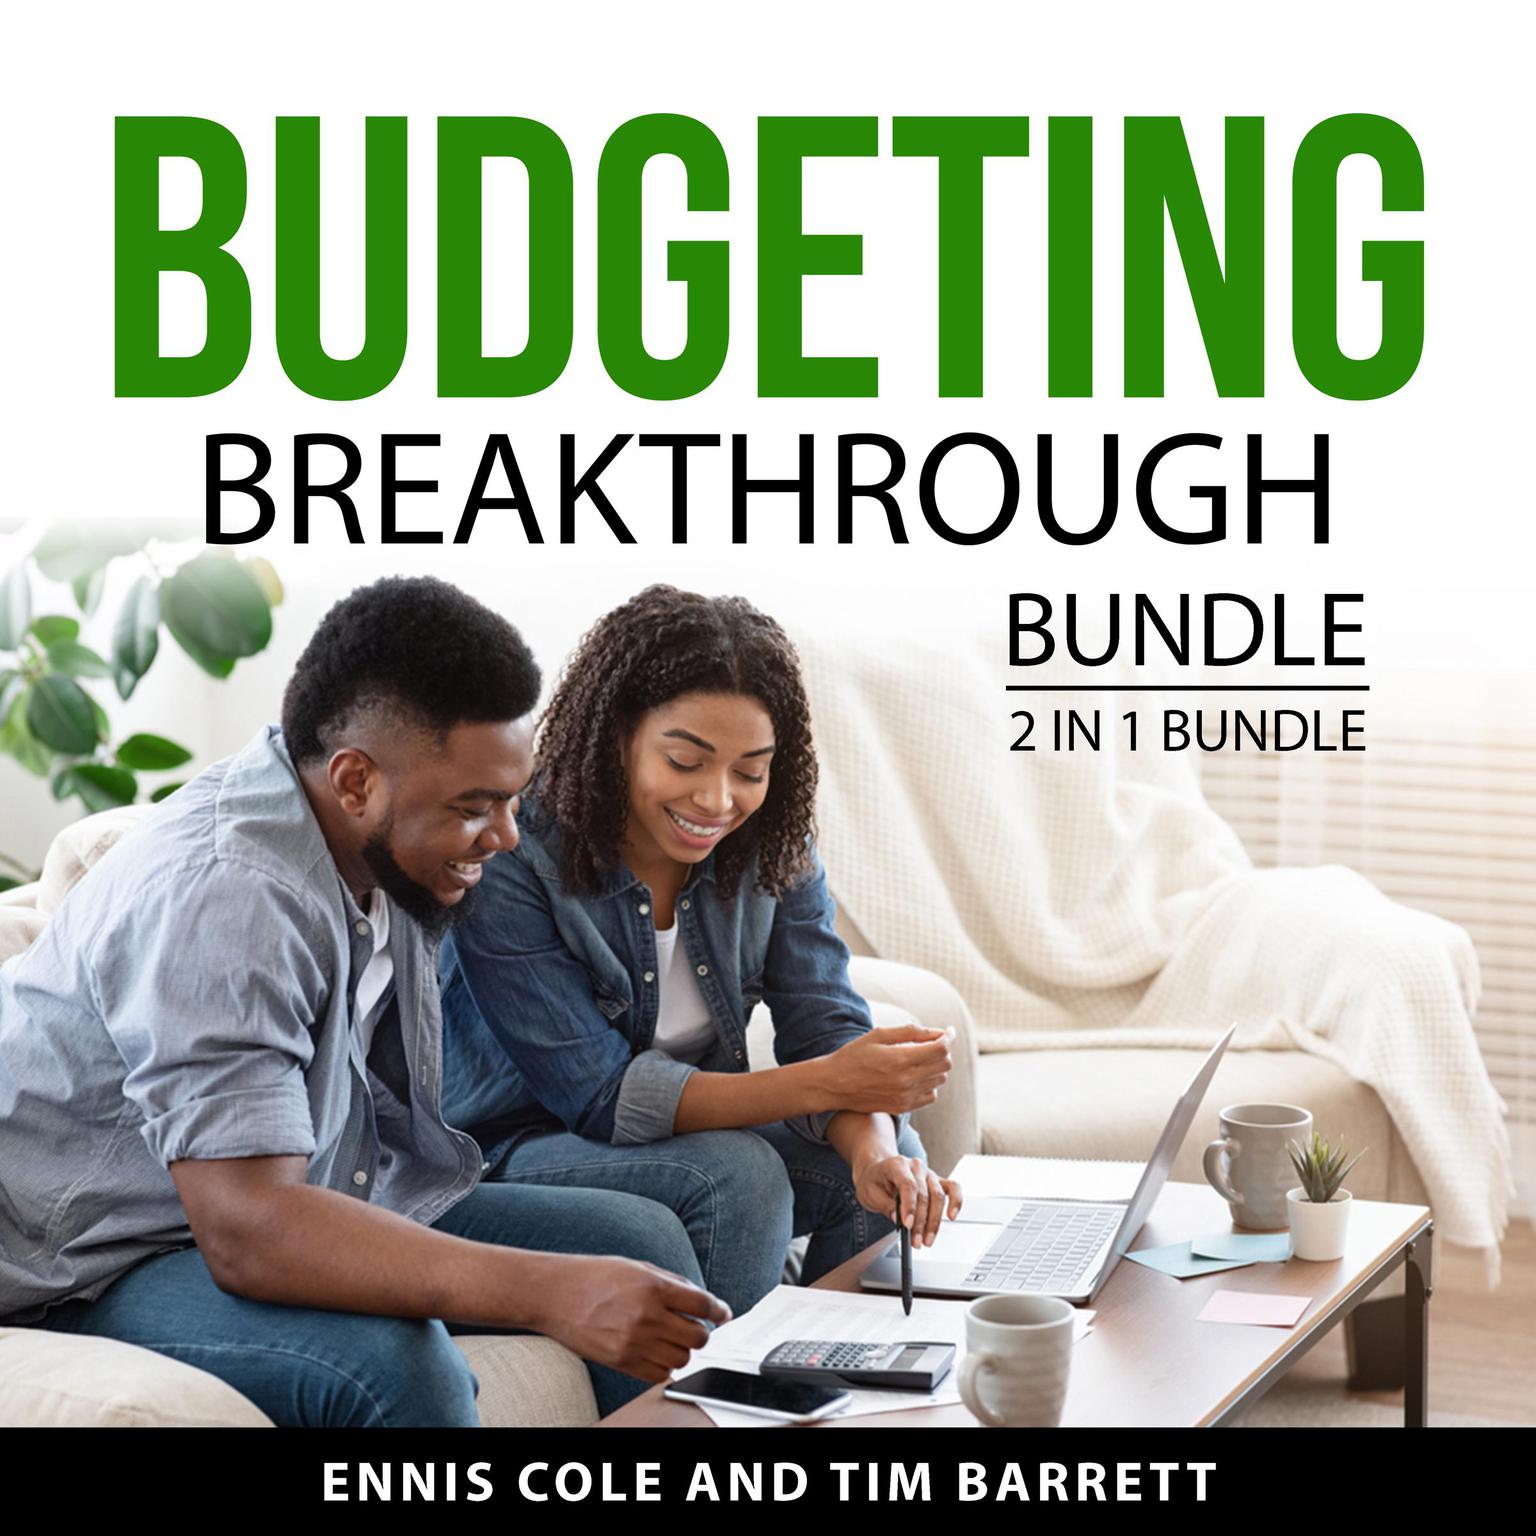 Budgeting Breakthrough Bundle, 2 in 1 Bundle Audiobook, by Ennis Cole